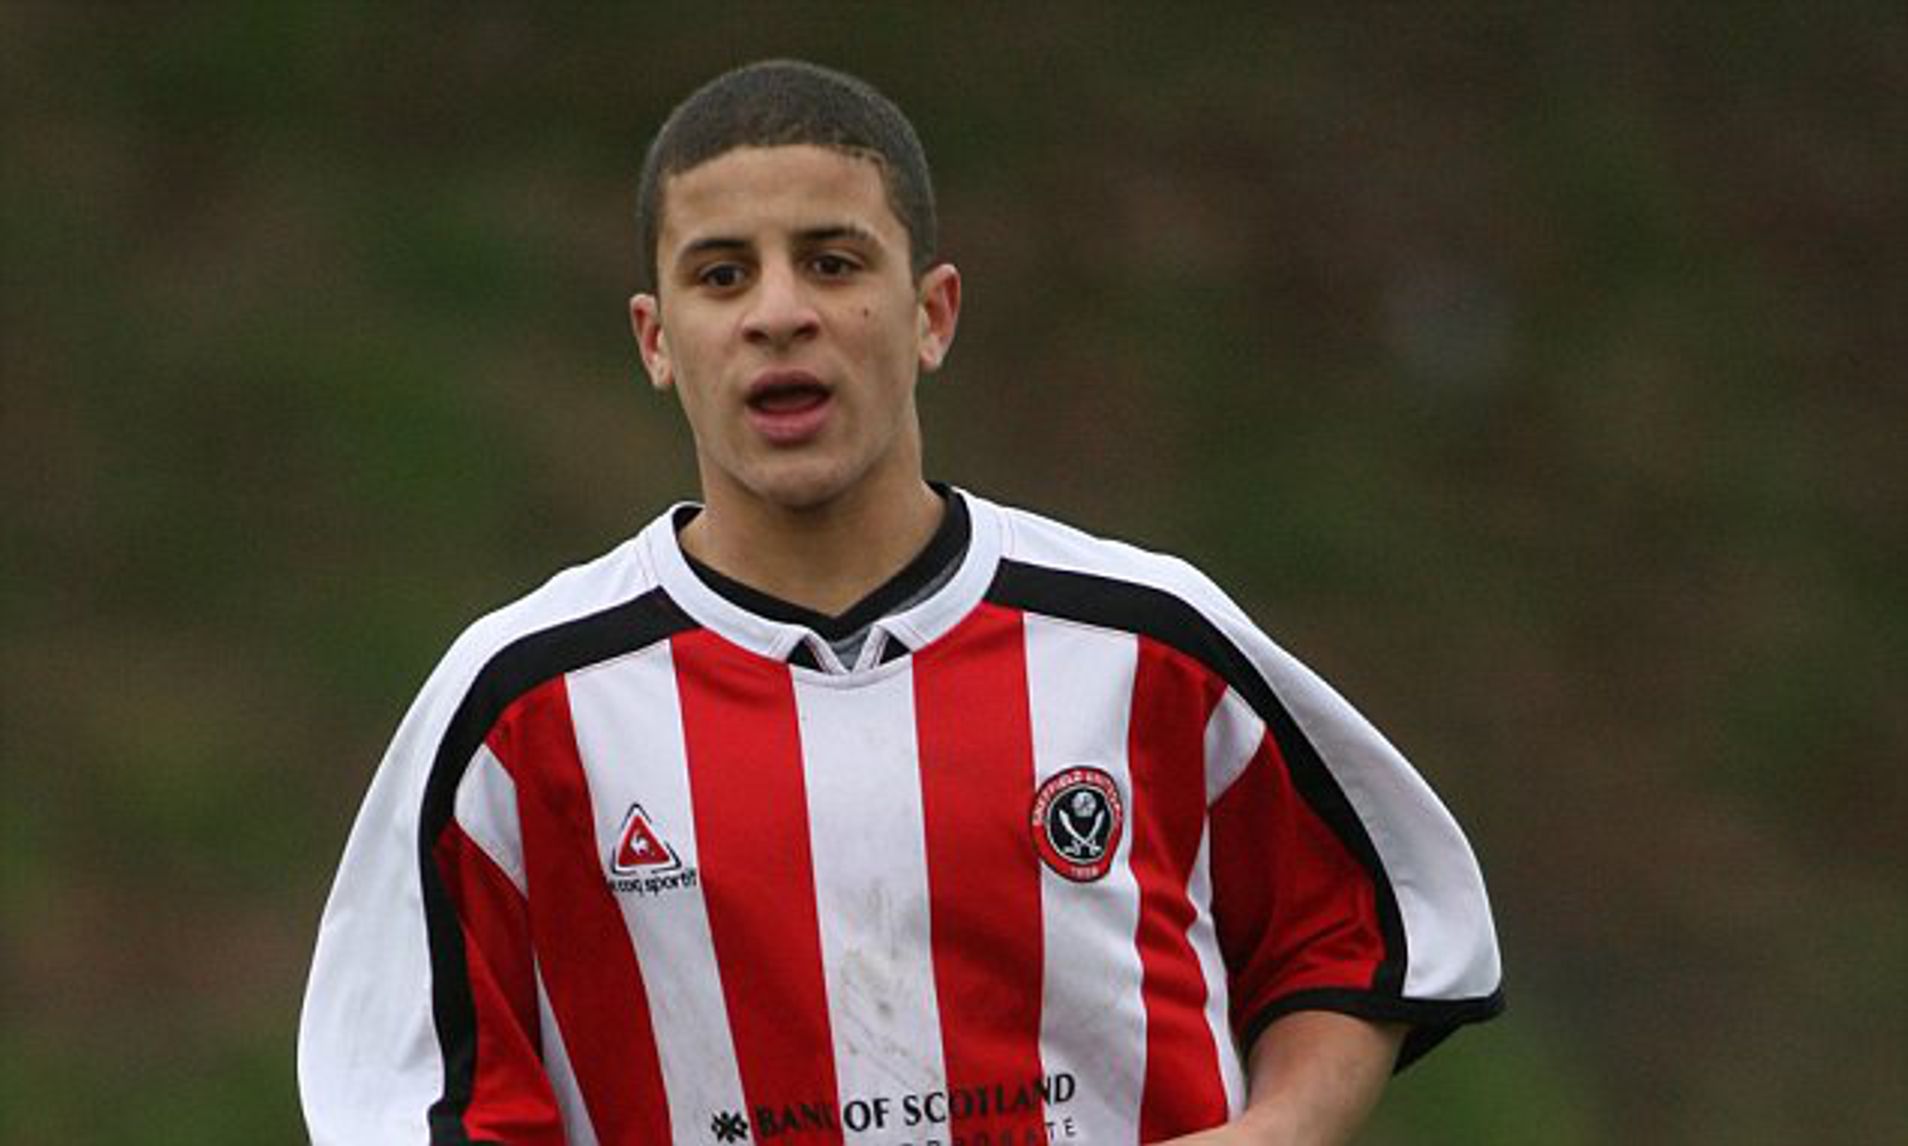 Walker sinh ra và lớn lên ở Sheffield, và có thời gian chơi cho CLB quê nhà